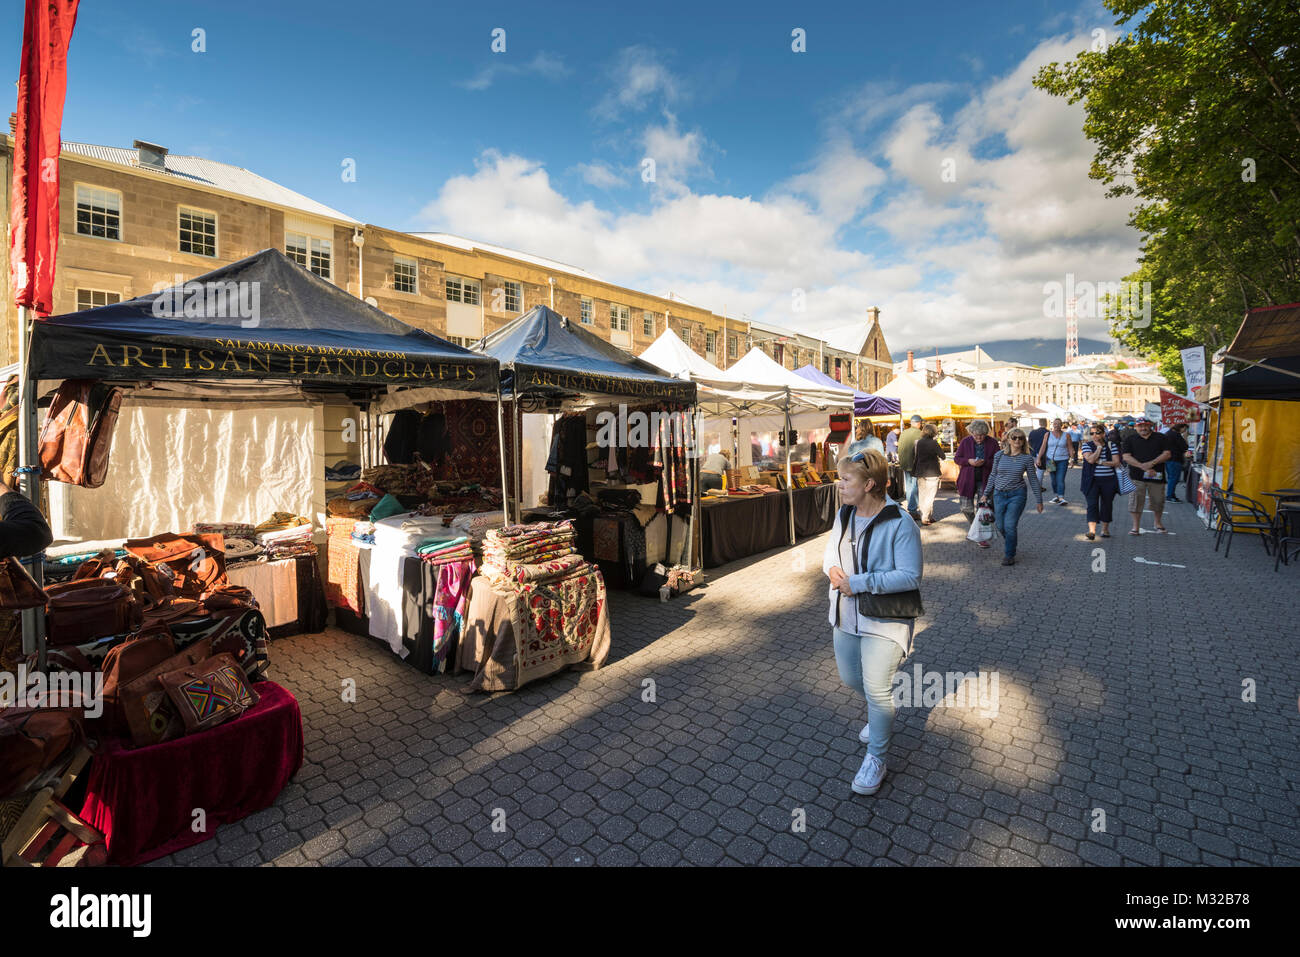 Le marché Salamanca est un marché de rue dans la région de Salamanca Place, Hobart, Tasmanie, Australie Banque D'Images